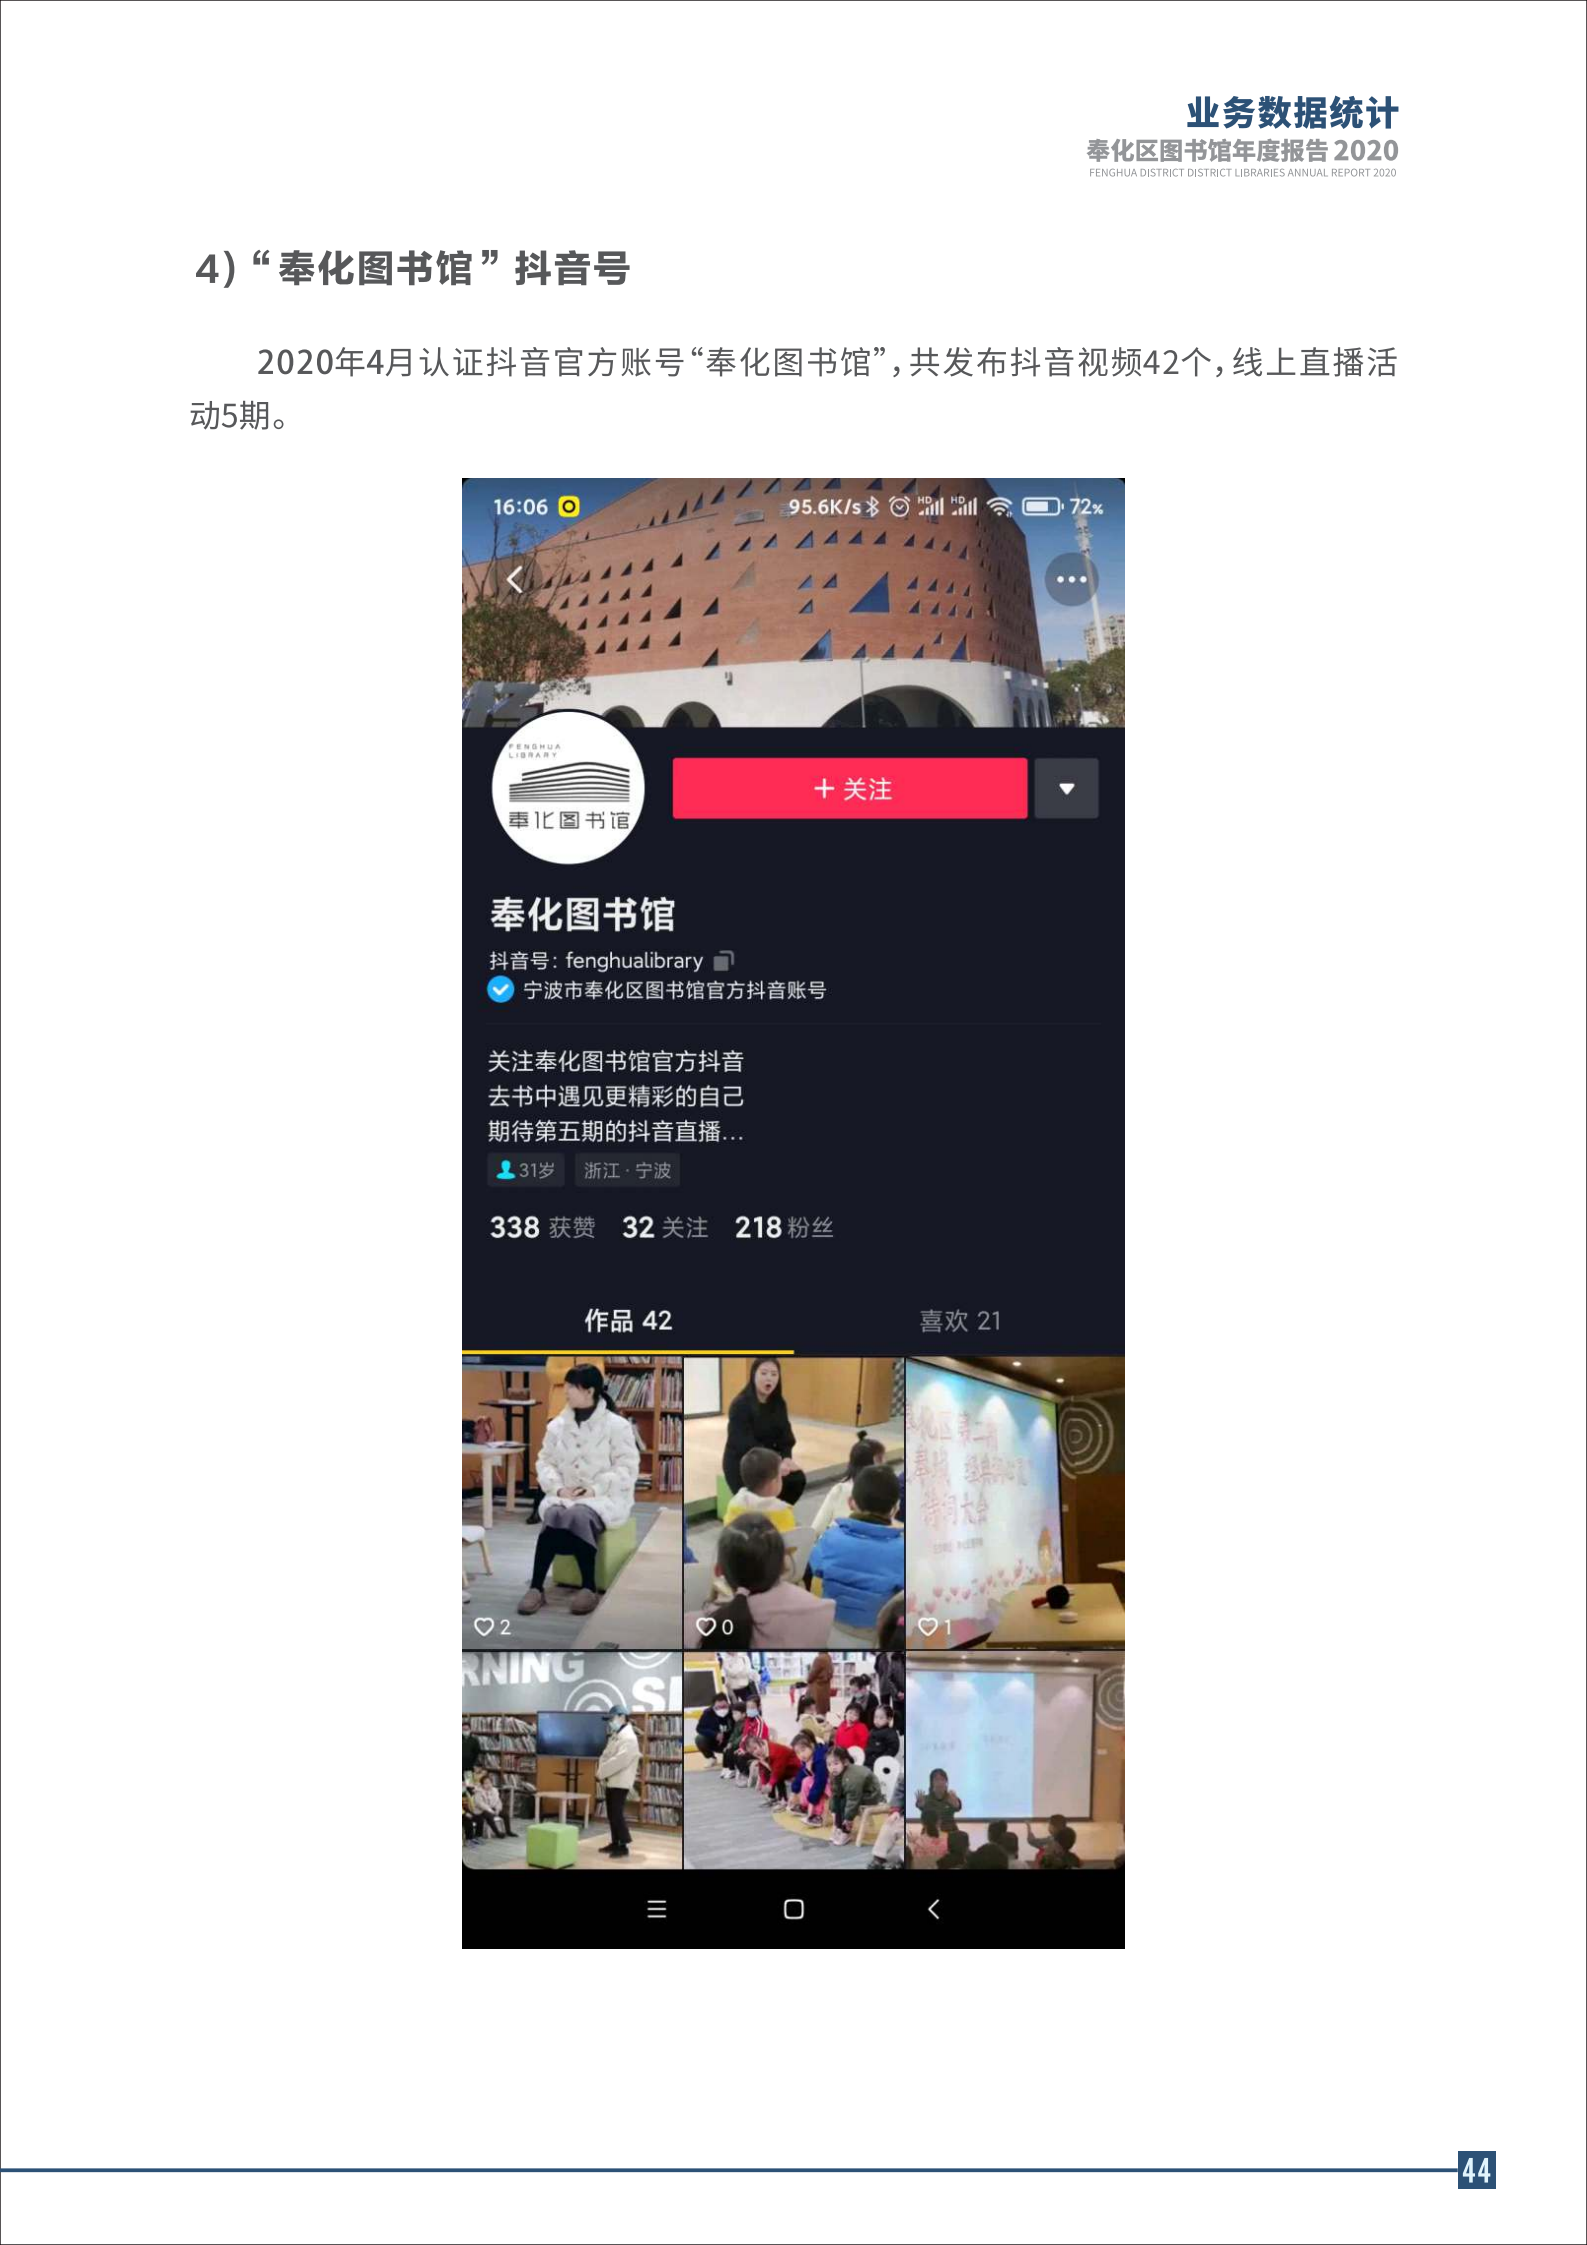 宁波市奉化区图书馆2020年年度报告 终稿_44.png